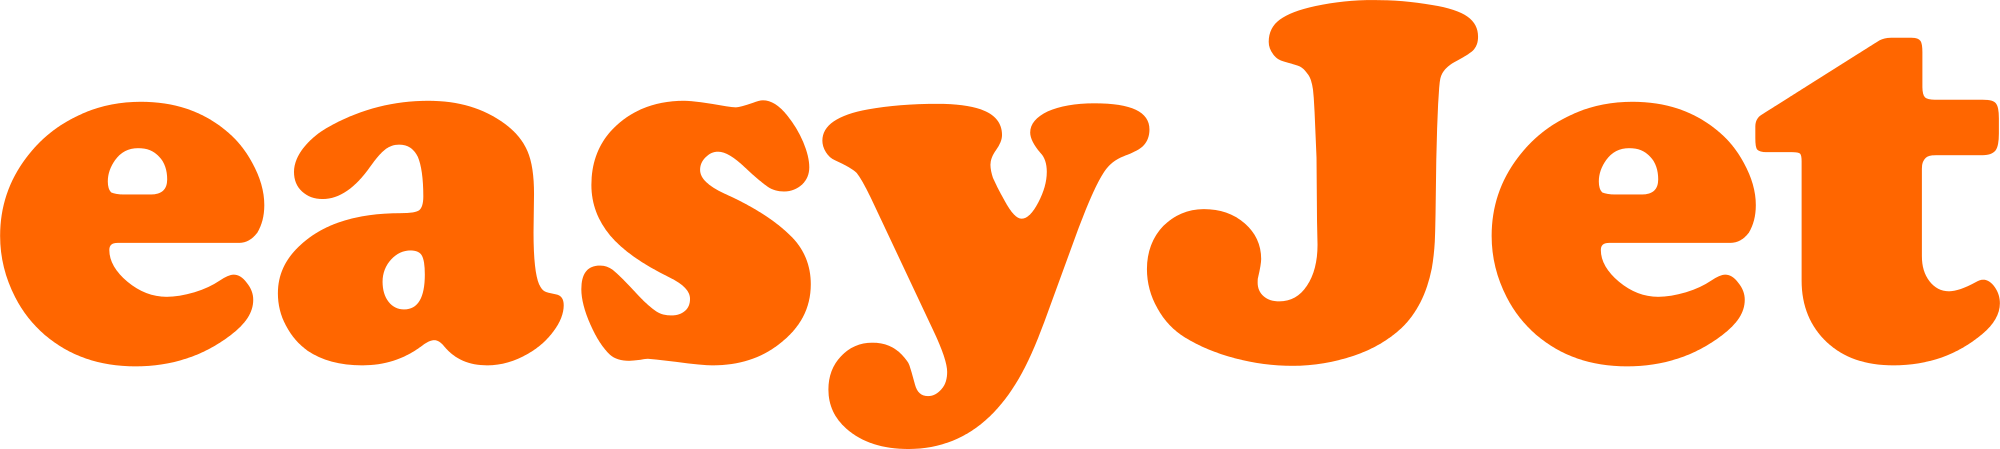 EasyJet emblem